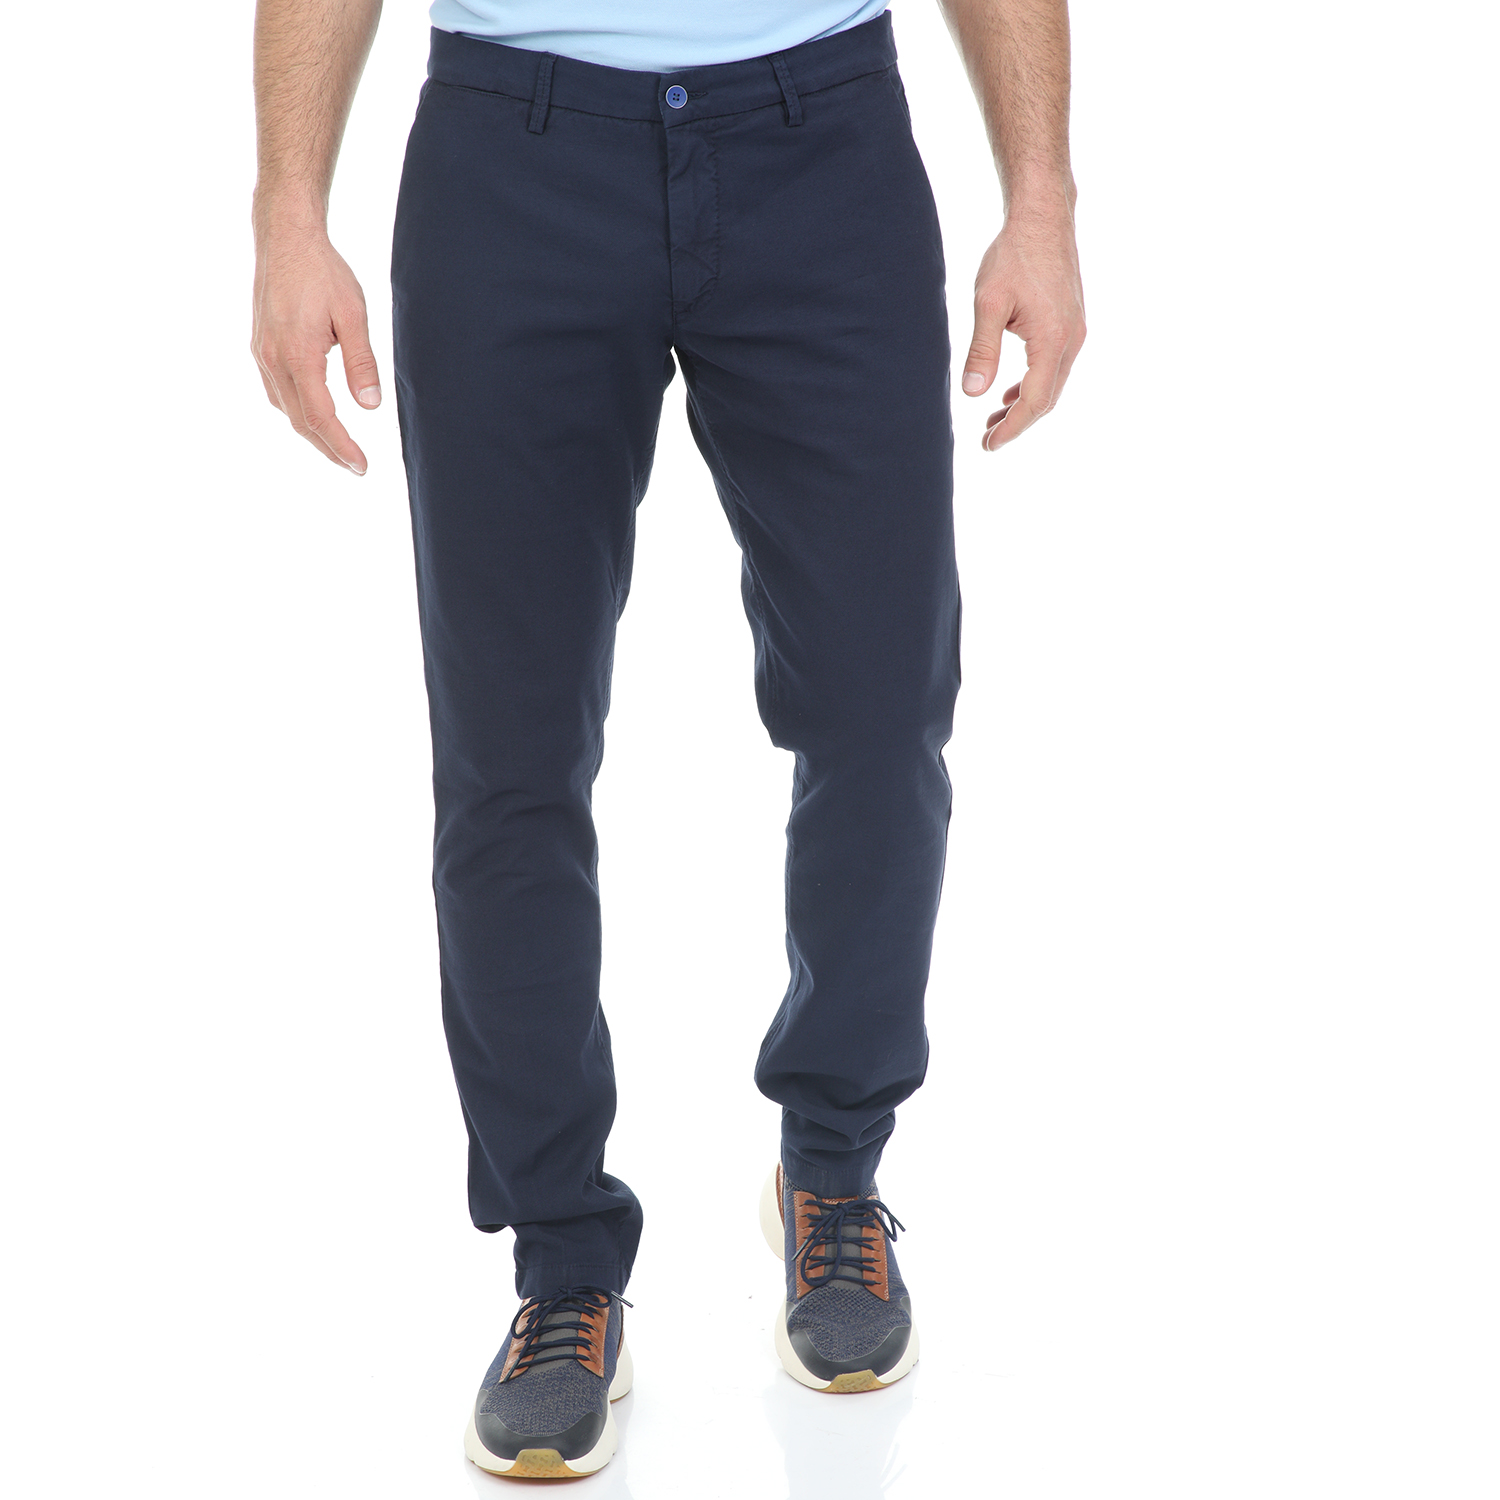 Ανδρικά/Ρούχα/Παντελόνια/Chinos BROOKSFIELD - Ανδρικό παντελόνι chino BROOKSFIELD μπλε